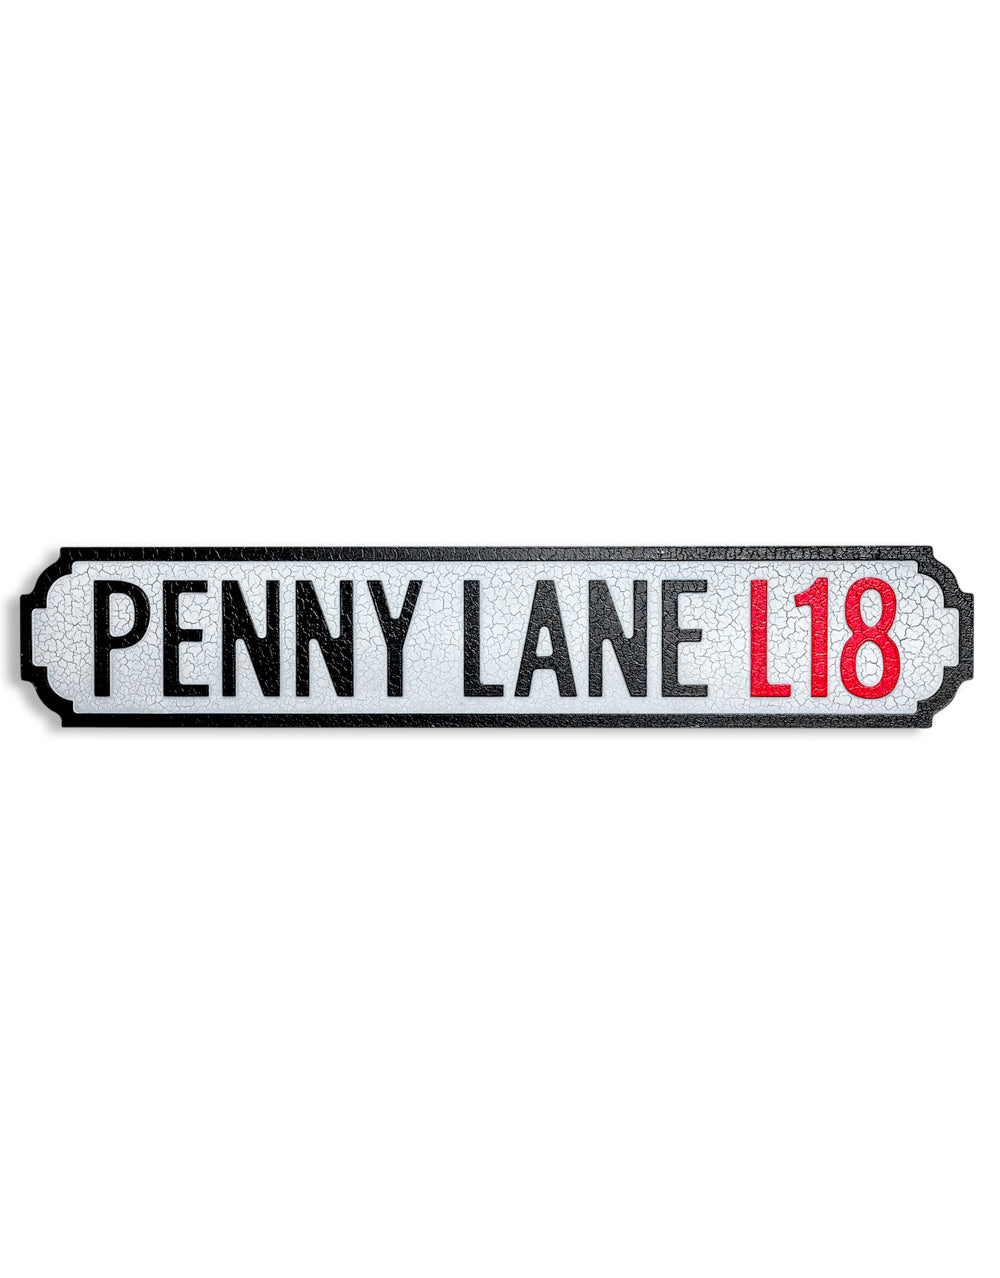 Antiqued Wooden "Penny Lane L18" Road Sign